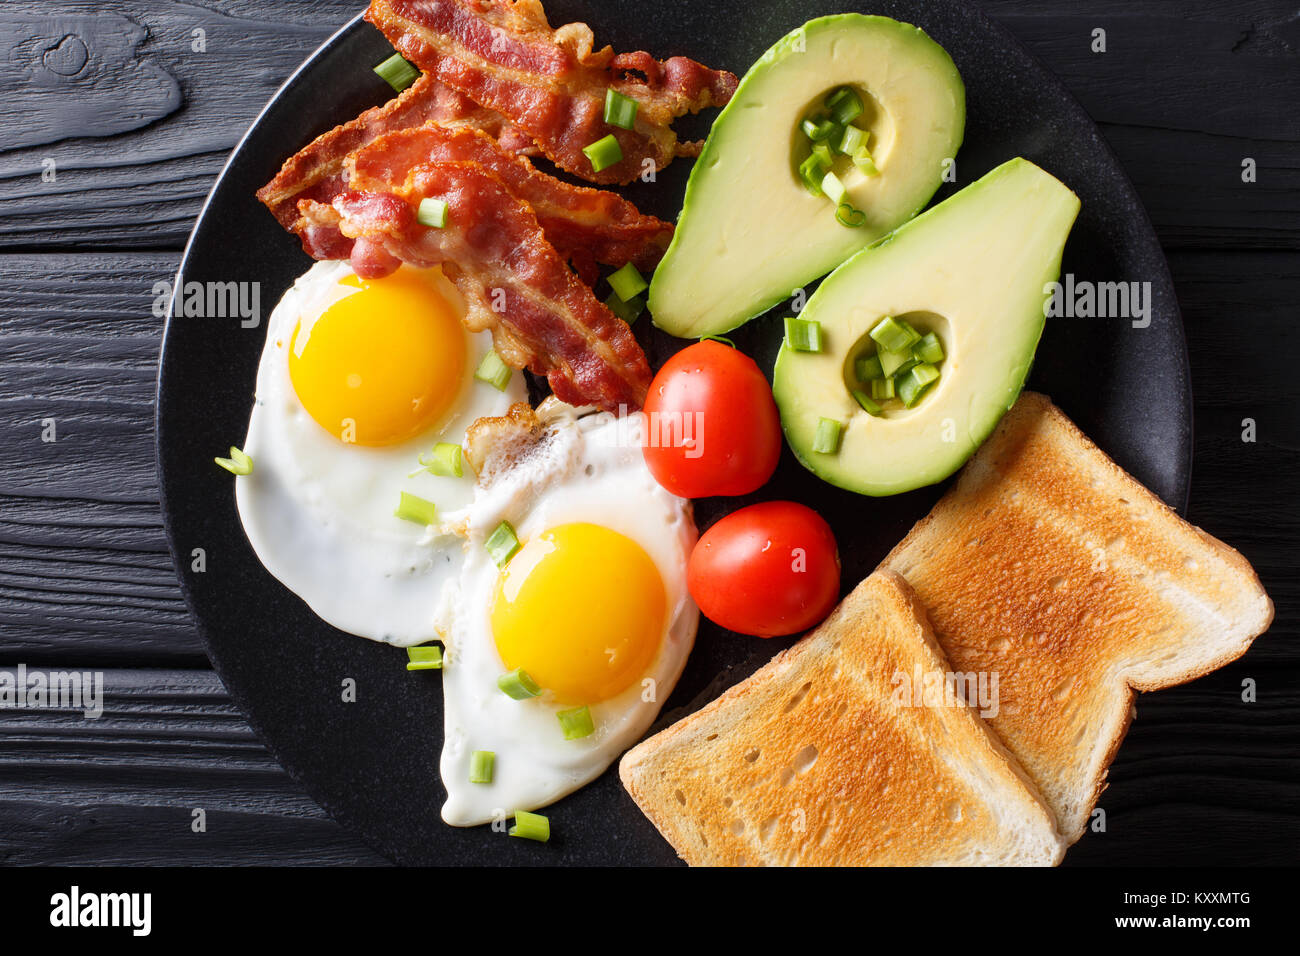 Delicioso desayuno de huevos con tocino crujiente, aguacate, tostadas y tomates de cerca en una placa negra sobre la mesa. Vista superior horizontal desde arriba Foto de stock